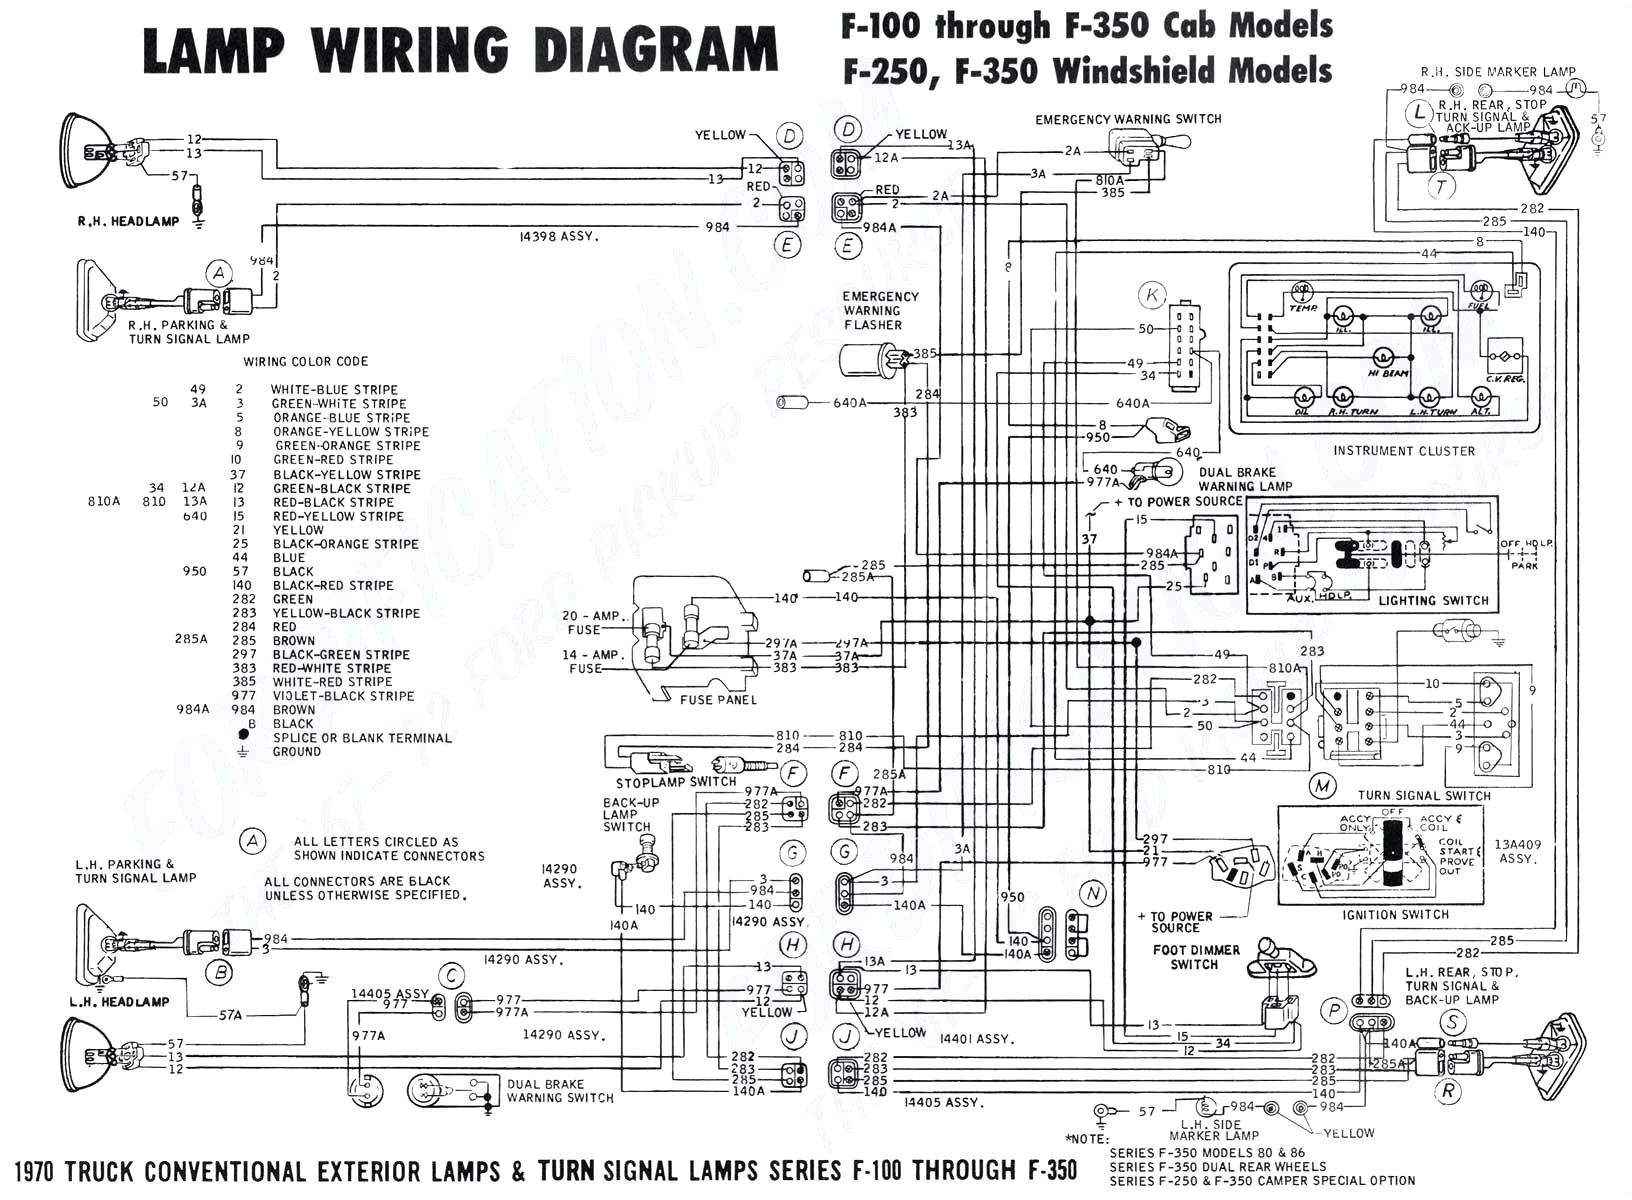 gm delco stereo wiring model 1400 wiring diagram list gm delco radio schematics